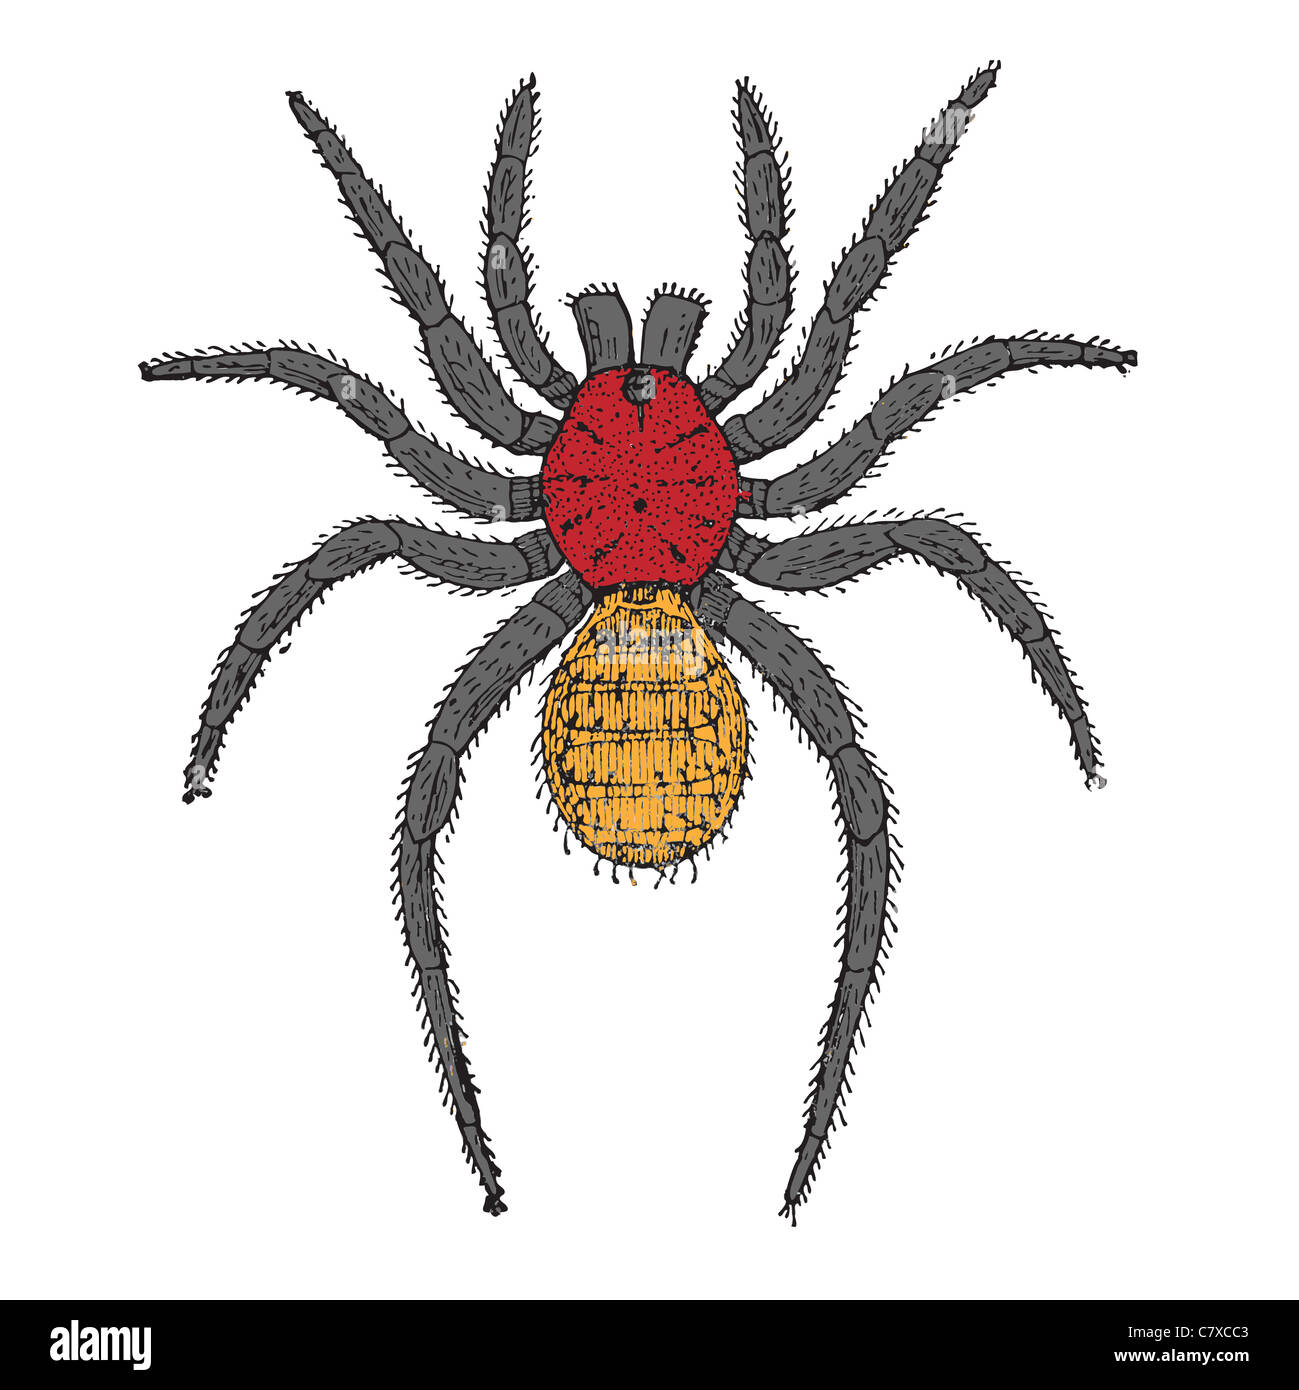 spider cartoon, abstract vector art illustration Stock Photo